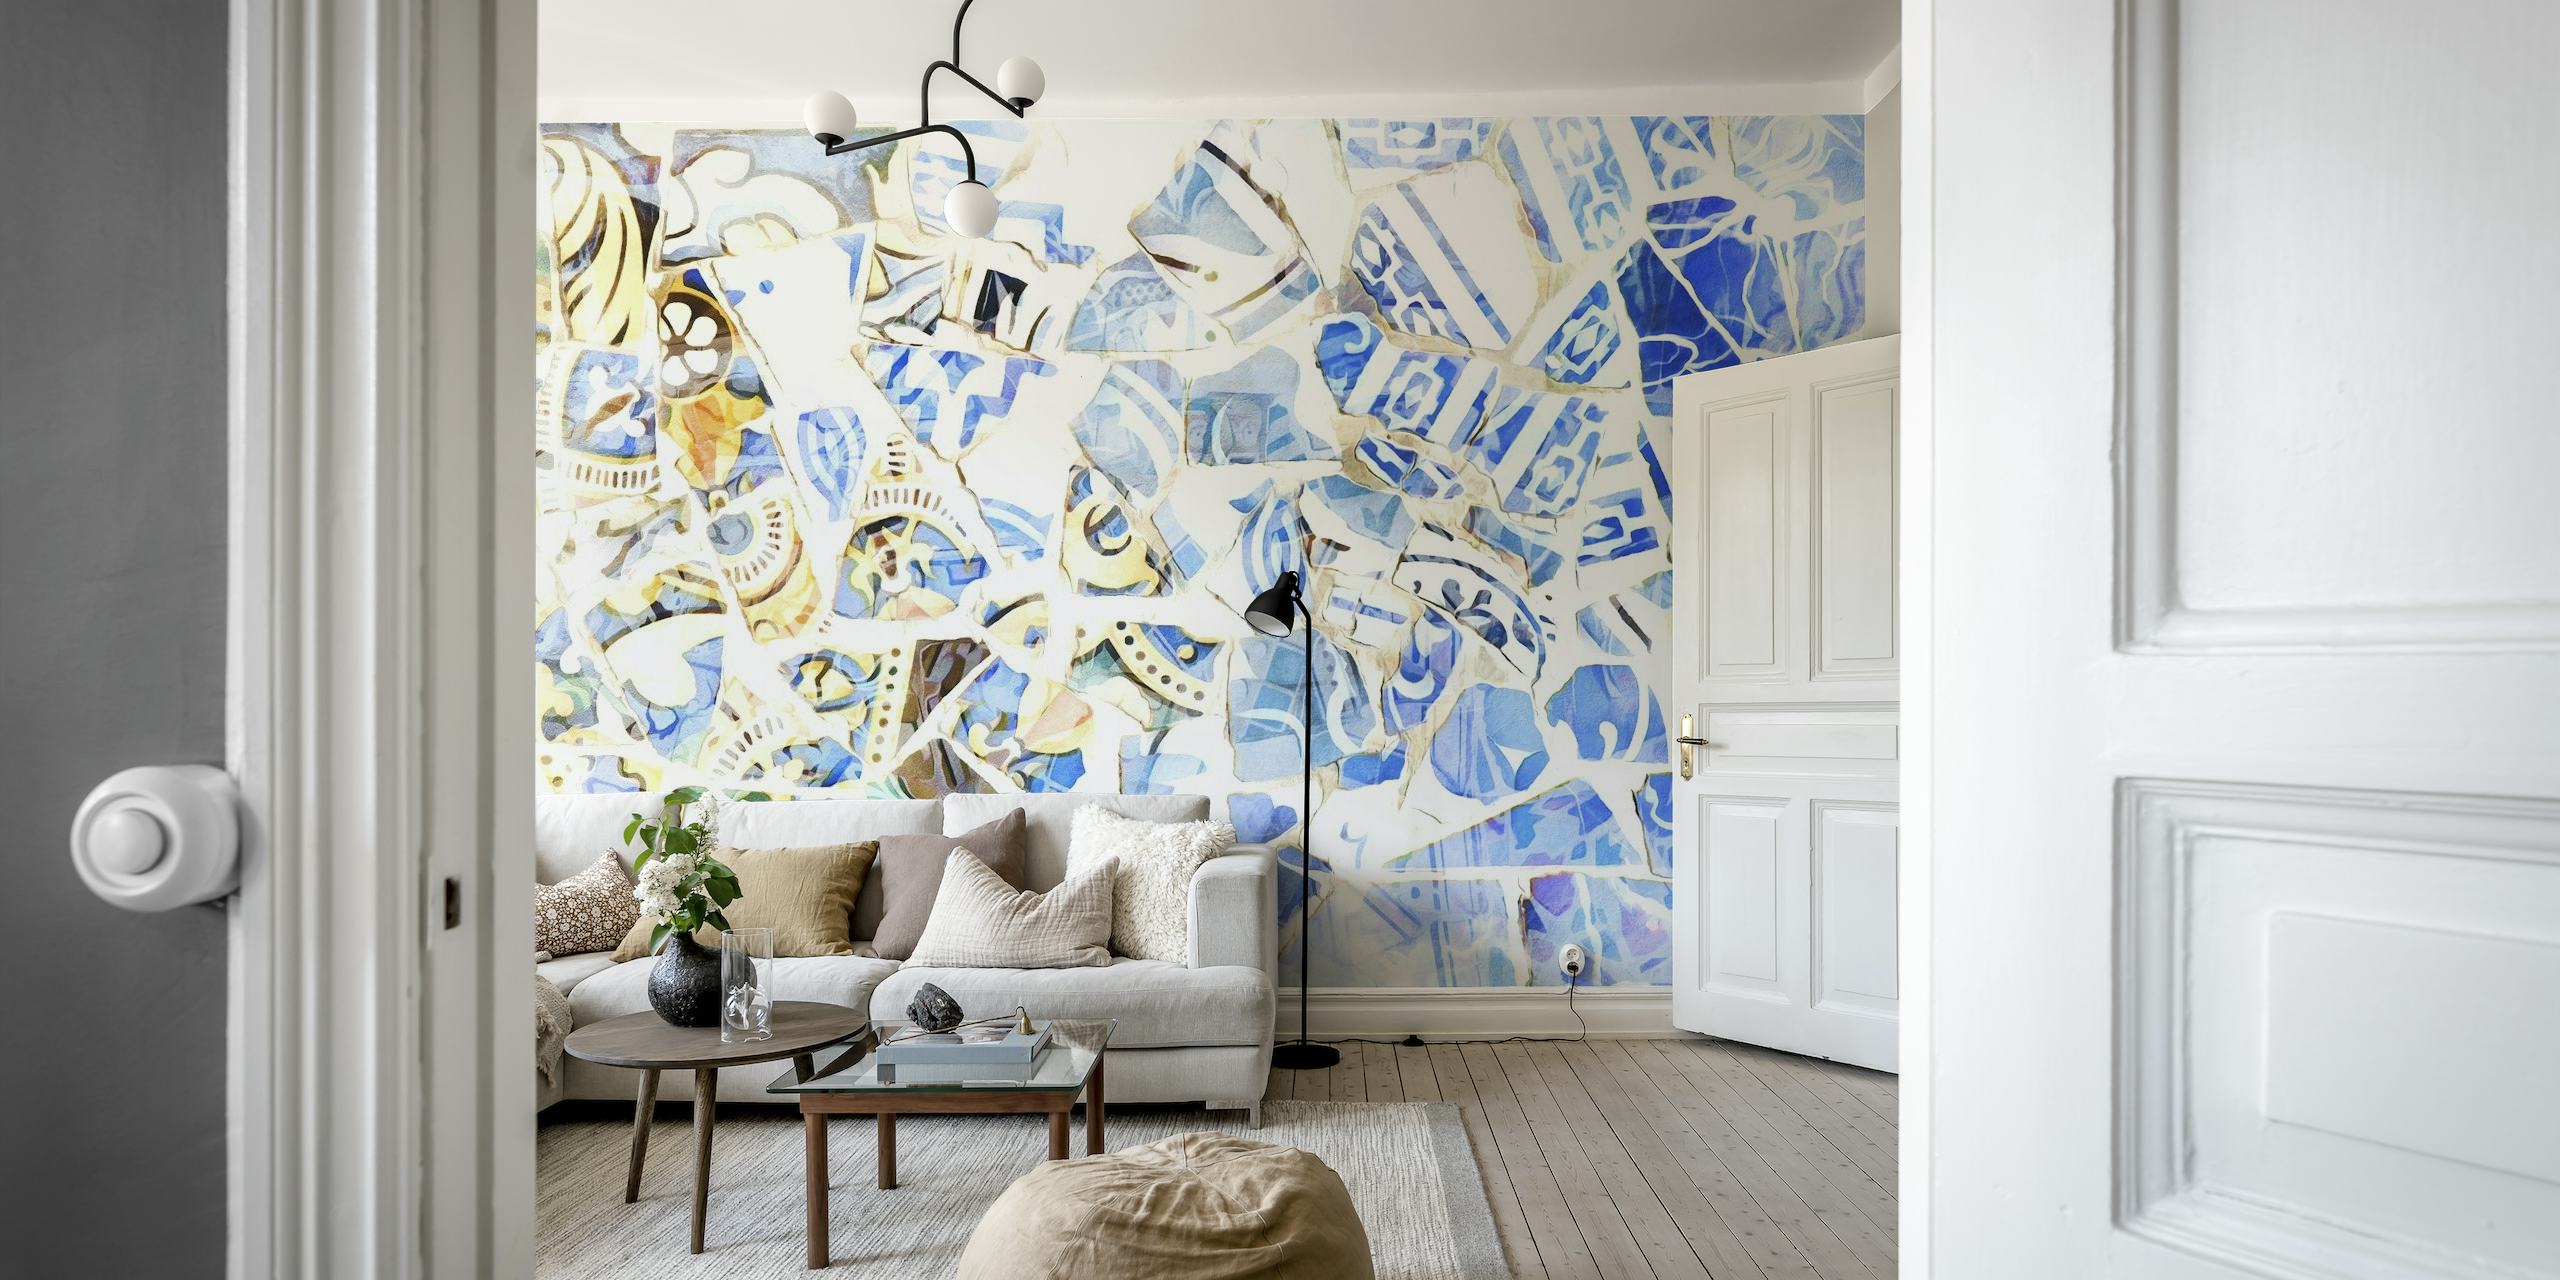 Apstraktni zidni mural od mozaika u nijansama plave i bijele, inspiriran barcelonskom umjetnošću